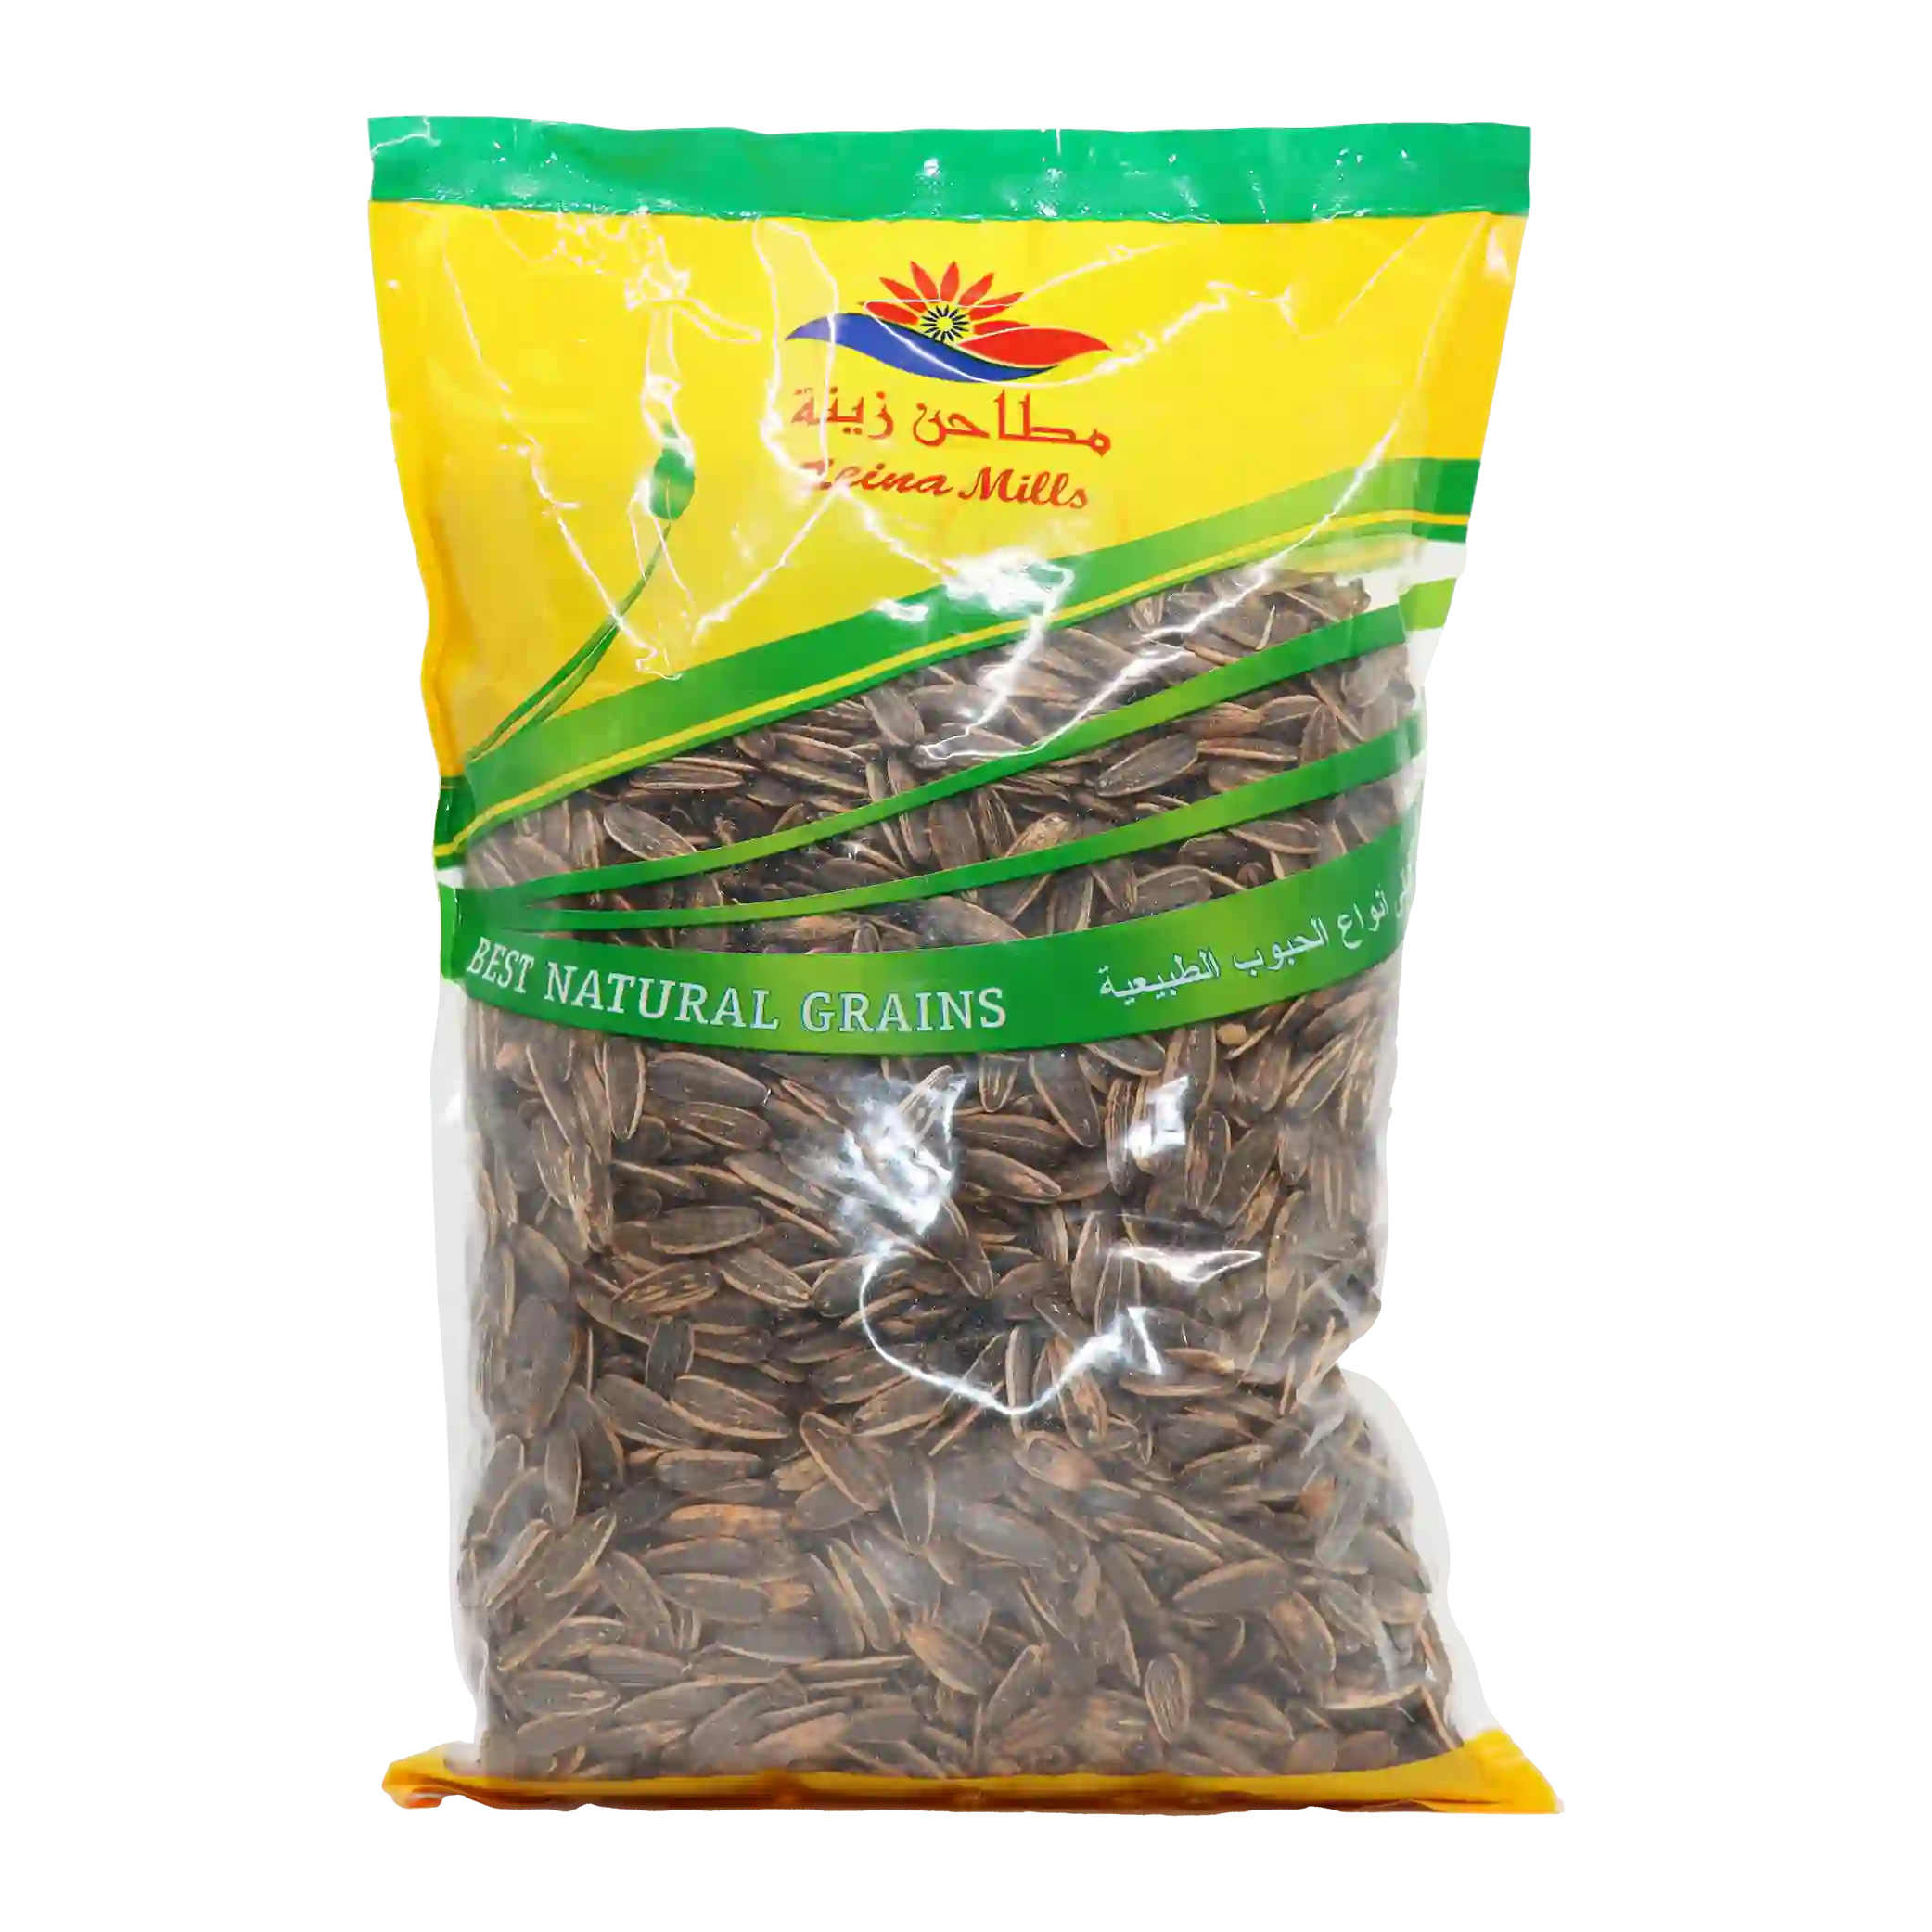 KAC -Smoked sunflower seeds - 1 kilo